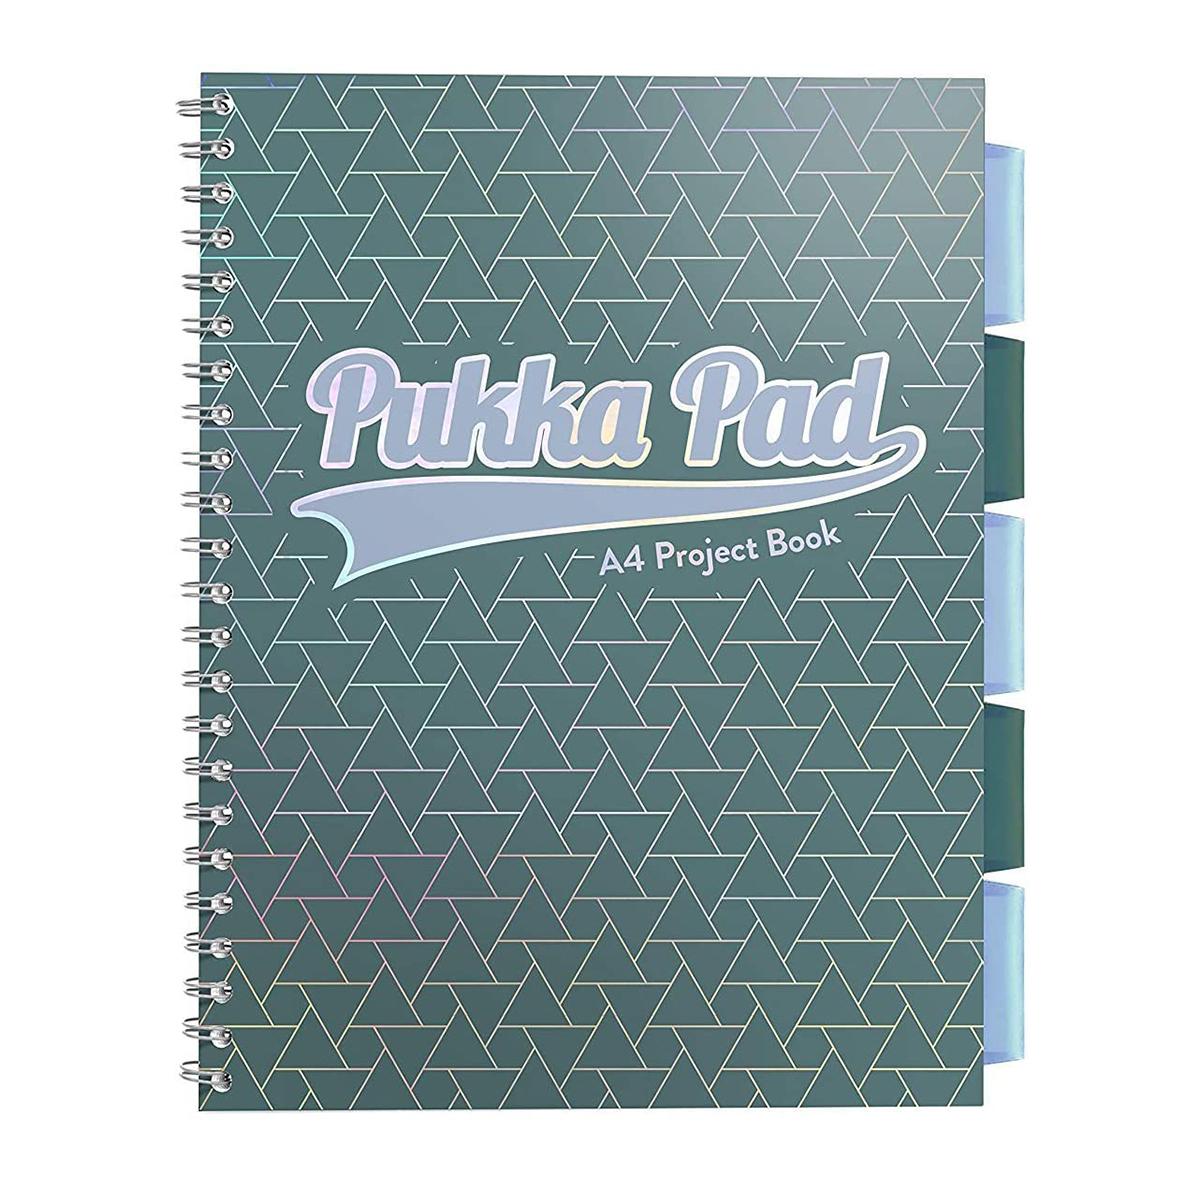 Caiet A4 cu spira si separatoare Pukka Pads PBG, 200 file, matematica, verde